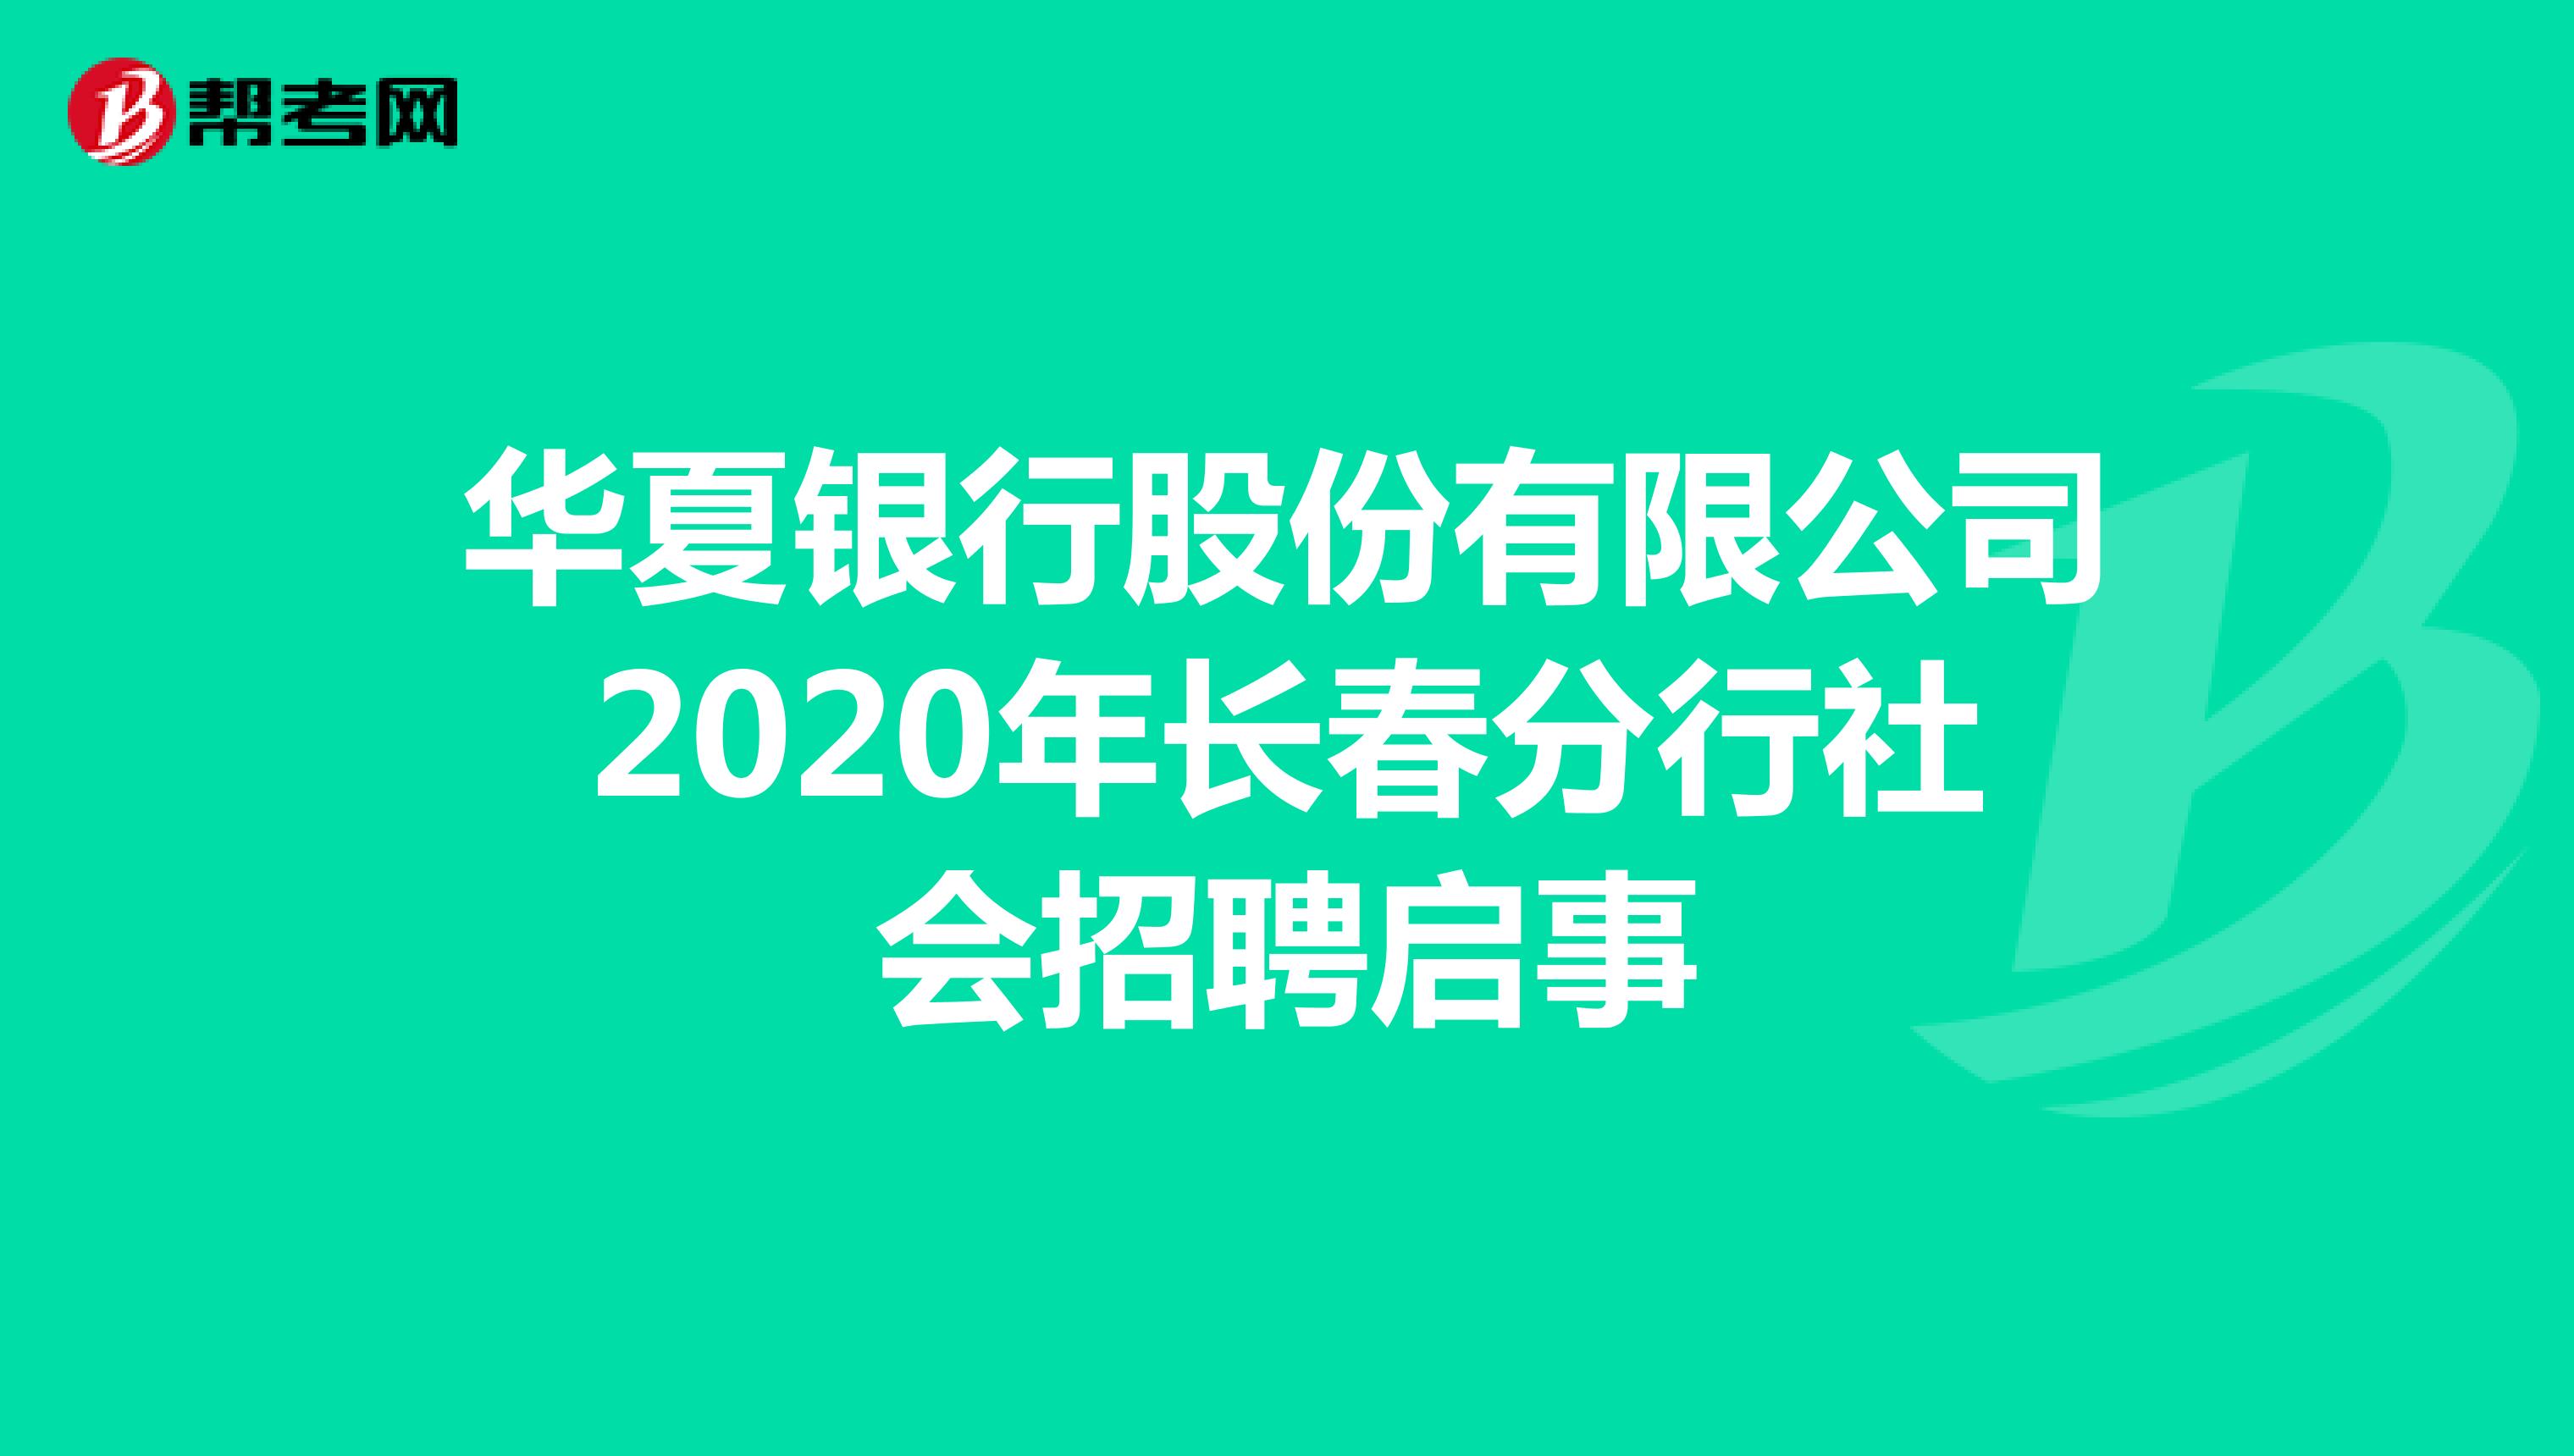 华夏银行股份有限公司2020年长春分行社会招聘启事